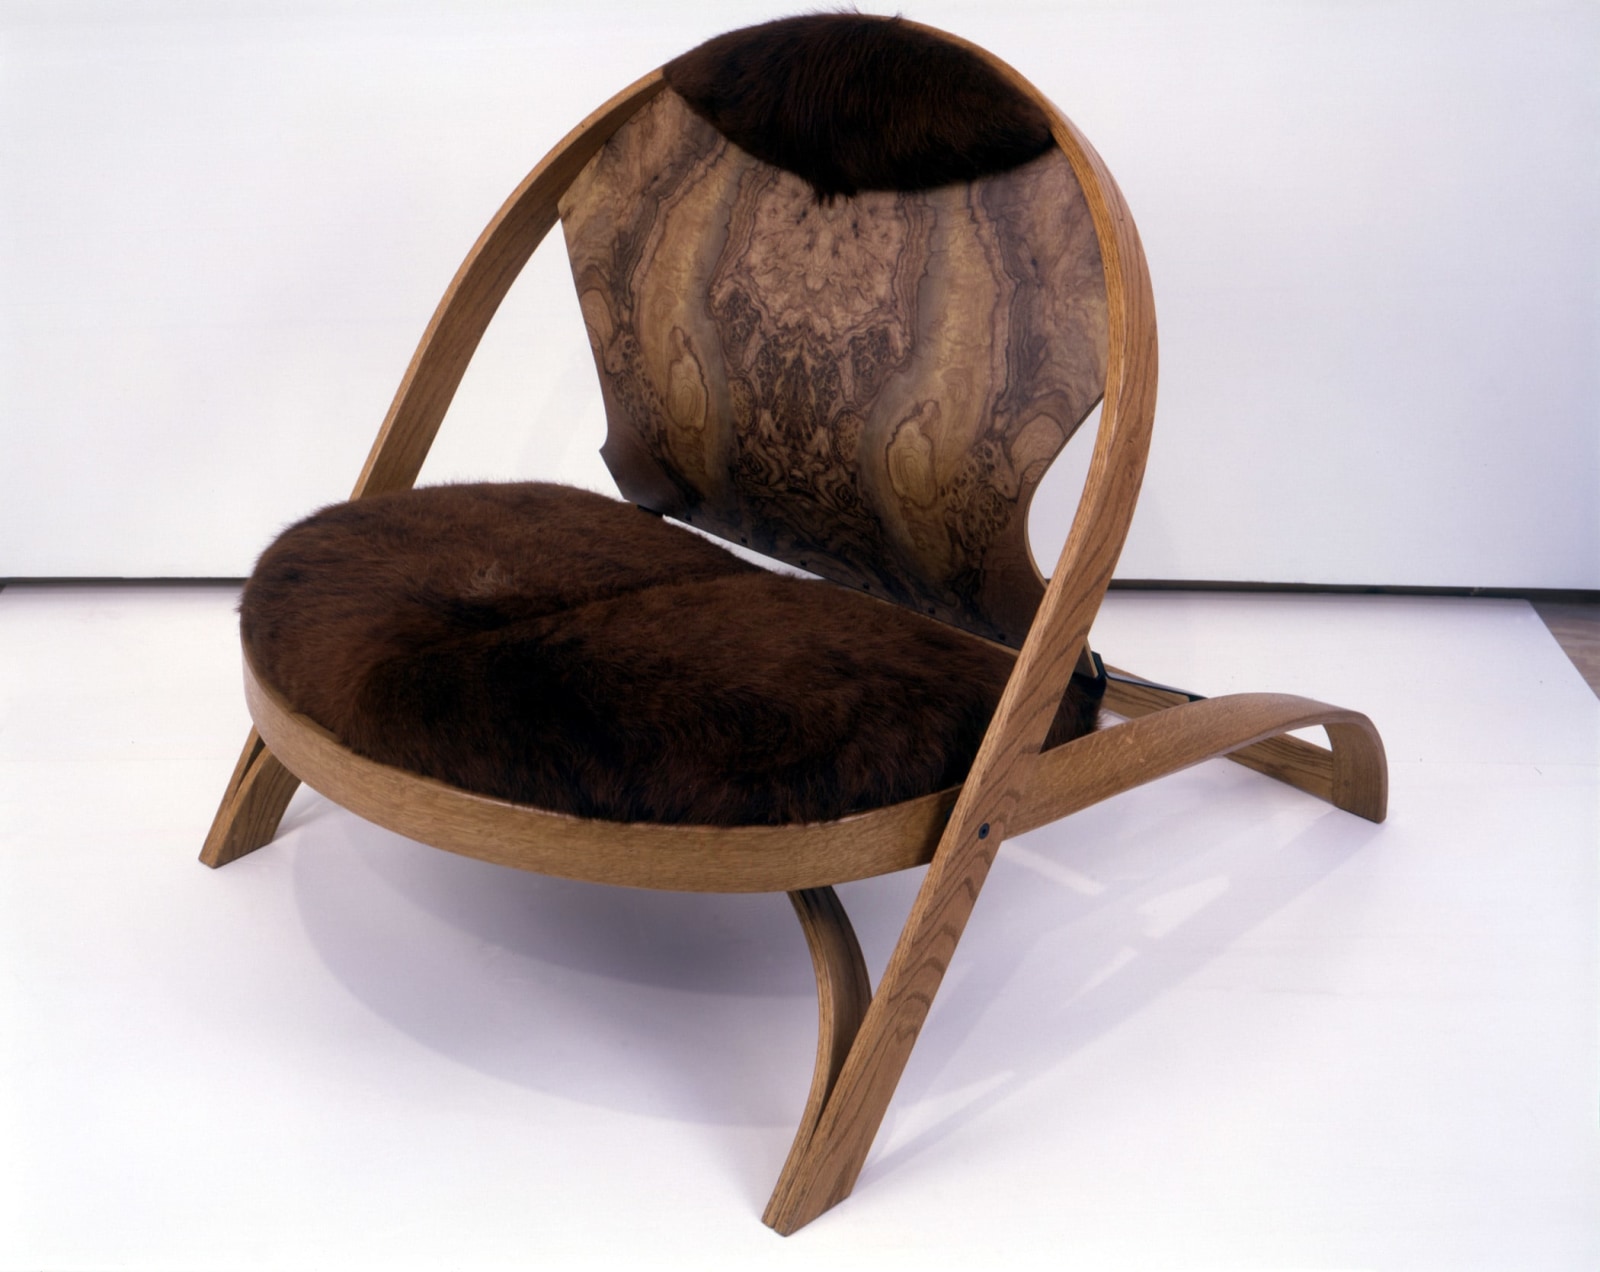 RICHARD ARTSCHWAGER, Chair/Chair, 1987-90